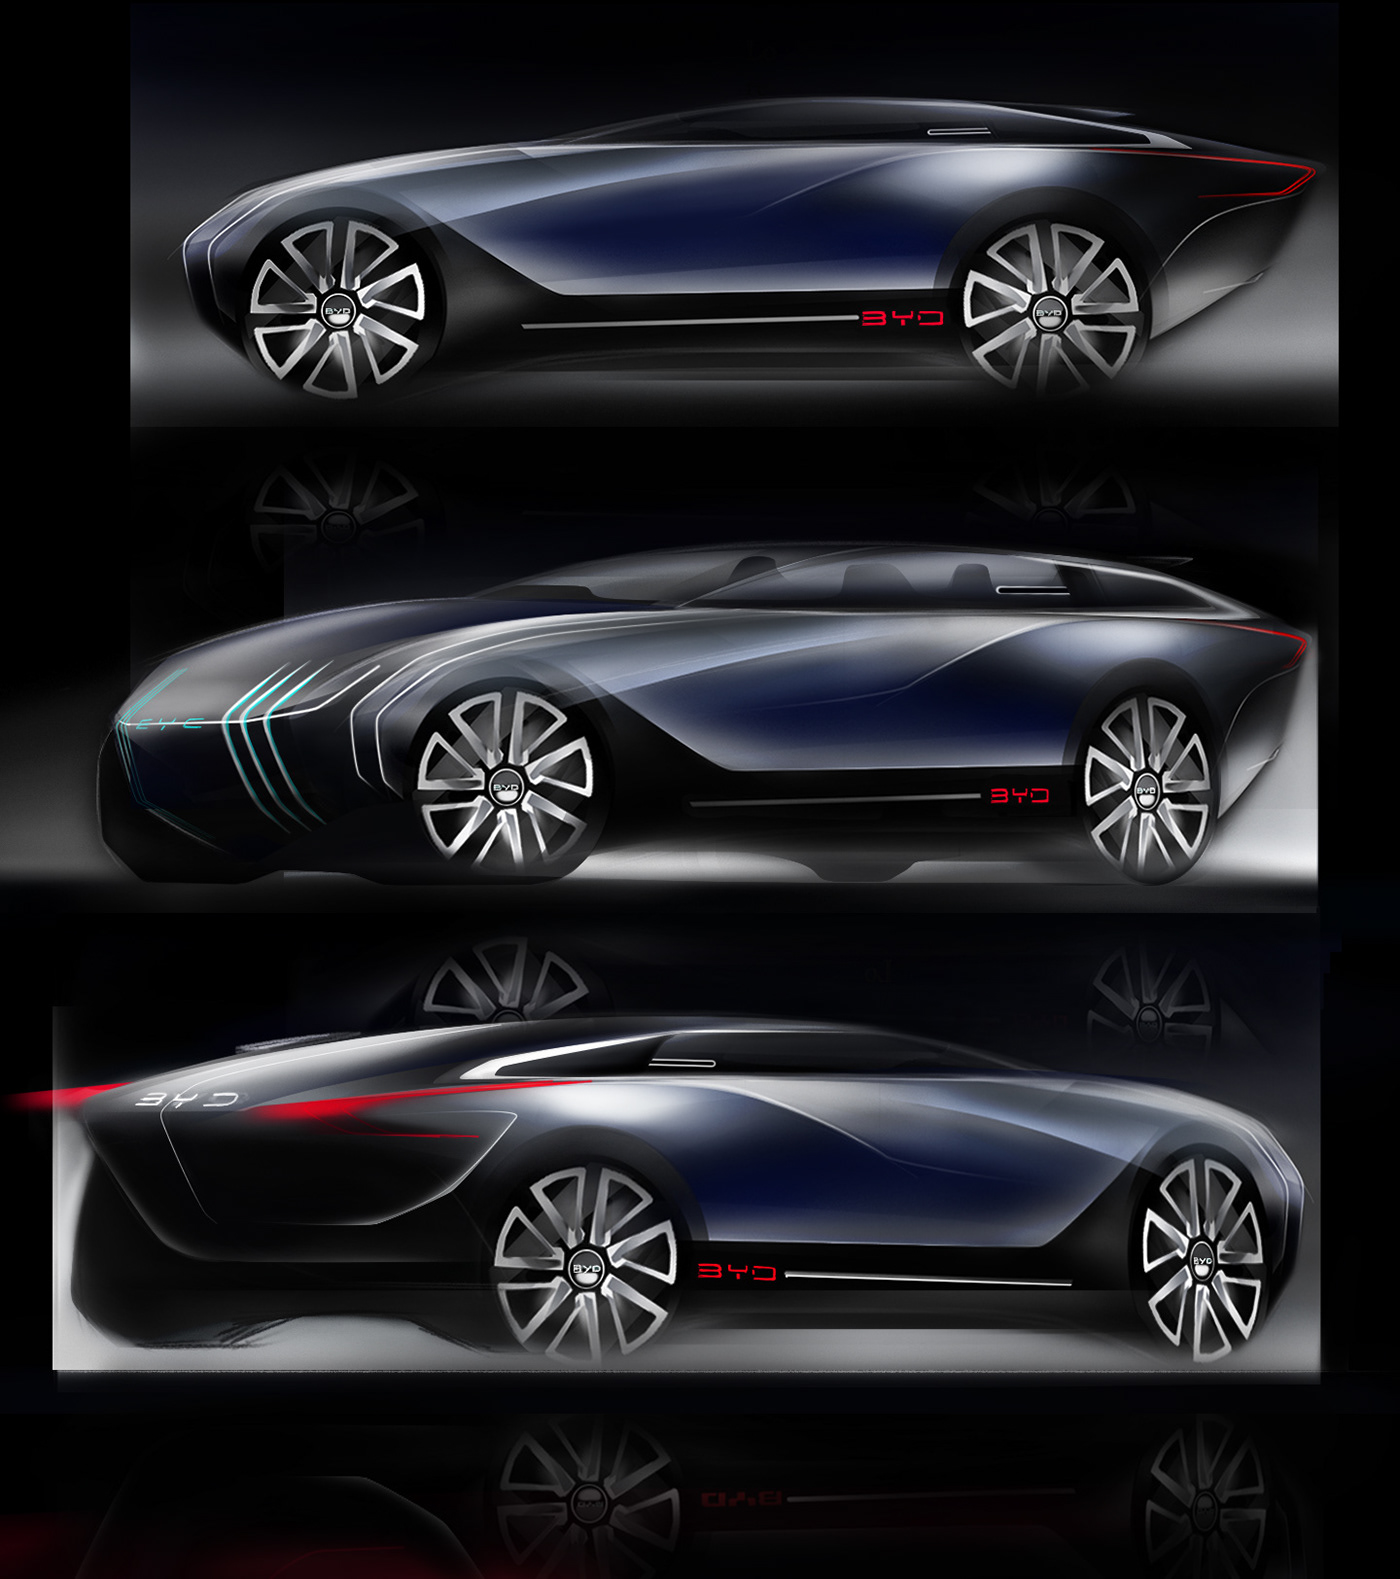 automotive deisign Autonomouscar car carconcept cardesign concept sedan Sedan Concept  transportationdesign